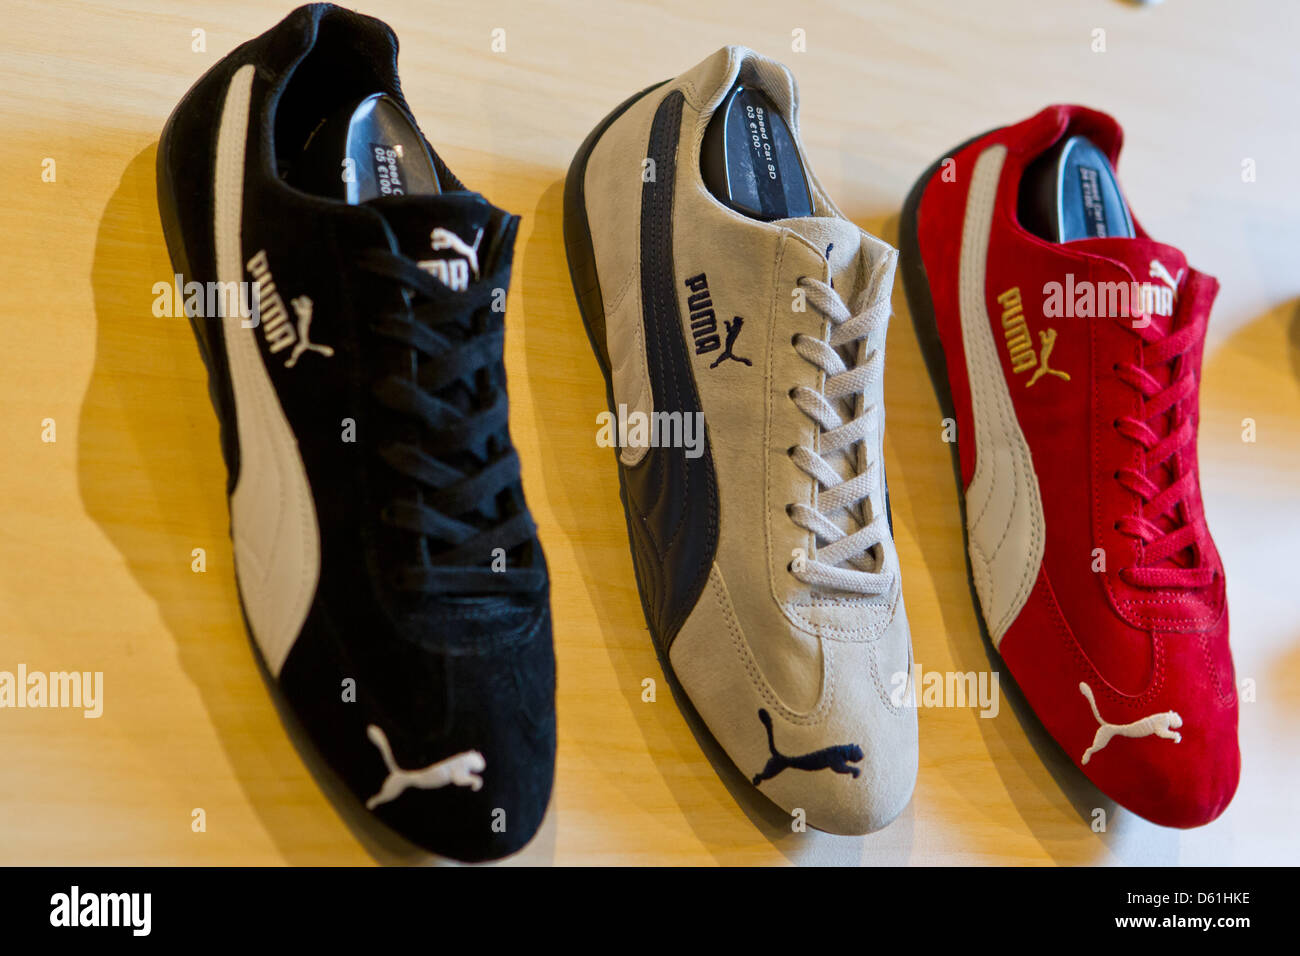 Le scarpe del produttore di abbigliamento sportivo Puma sono visualizzati  in un negozio a Herzogenaurach, Germania, 24 aprile 2012. In 2011, Puma ha  raggiunto i 3 miliardi di euro di fatturato per